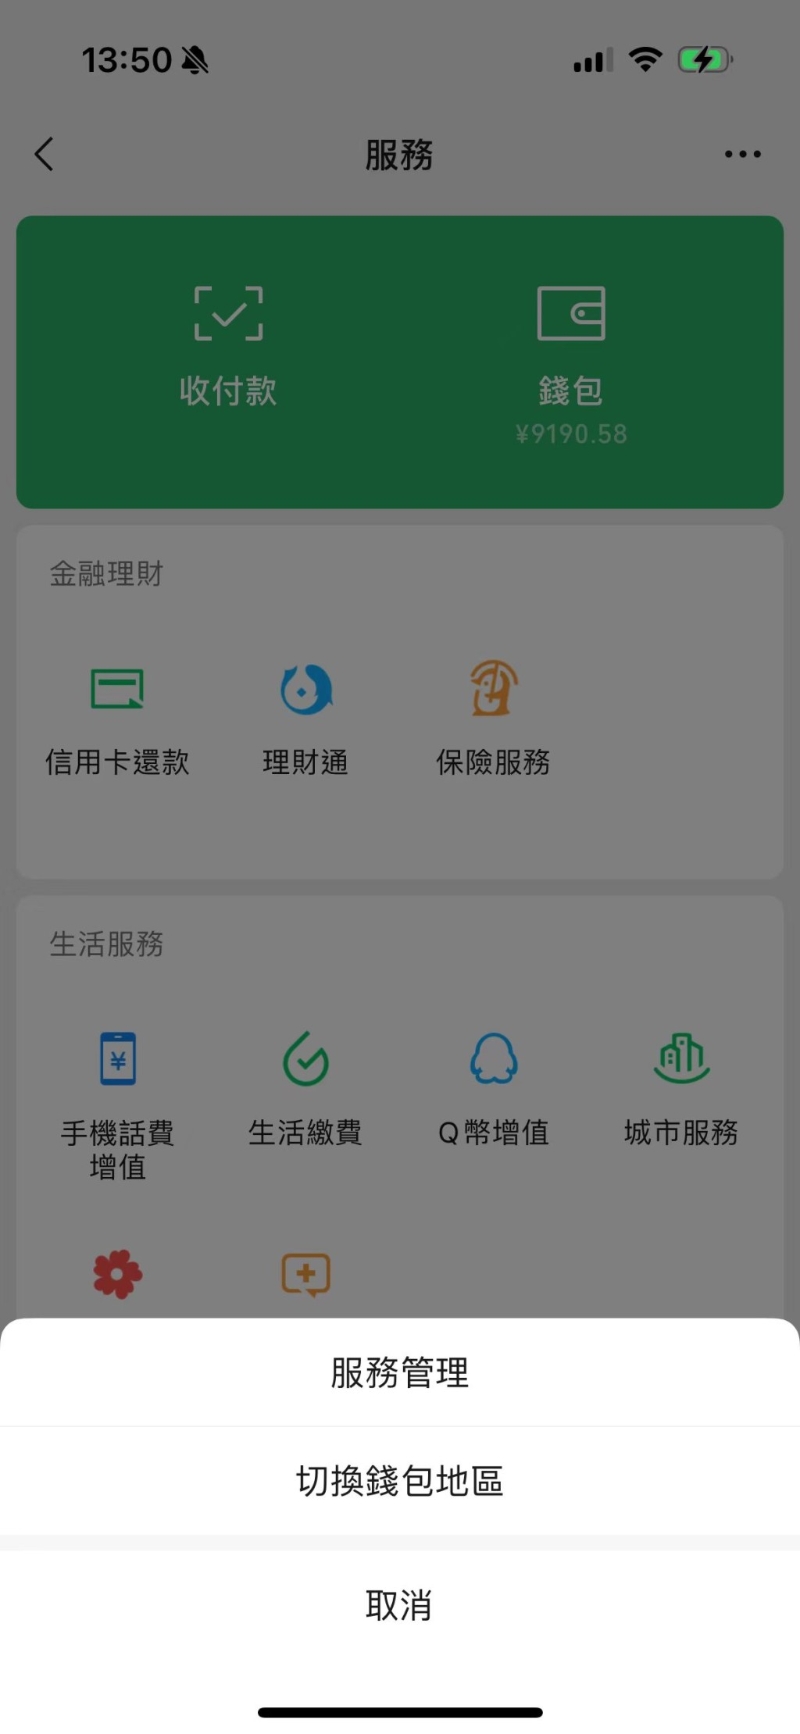 由微信支付切换钱包地区至WeChat Pay HK